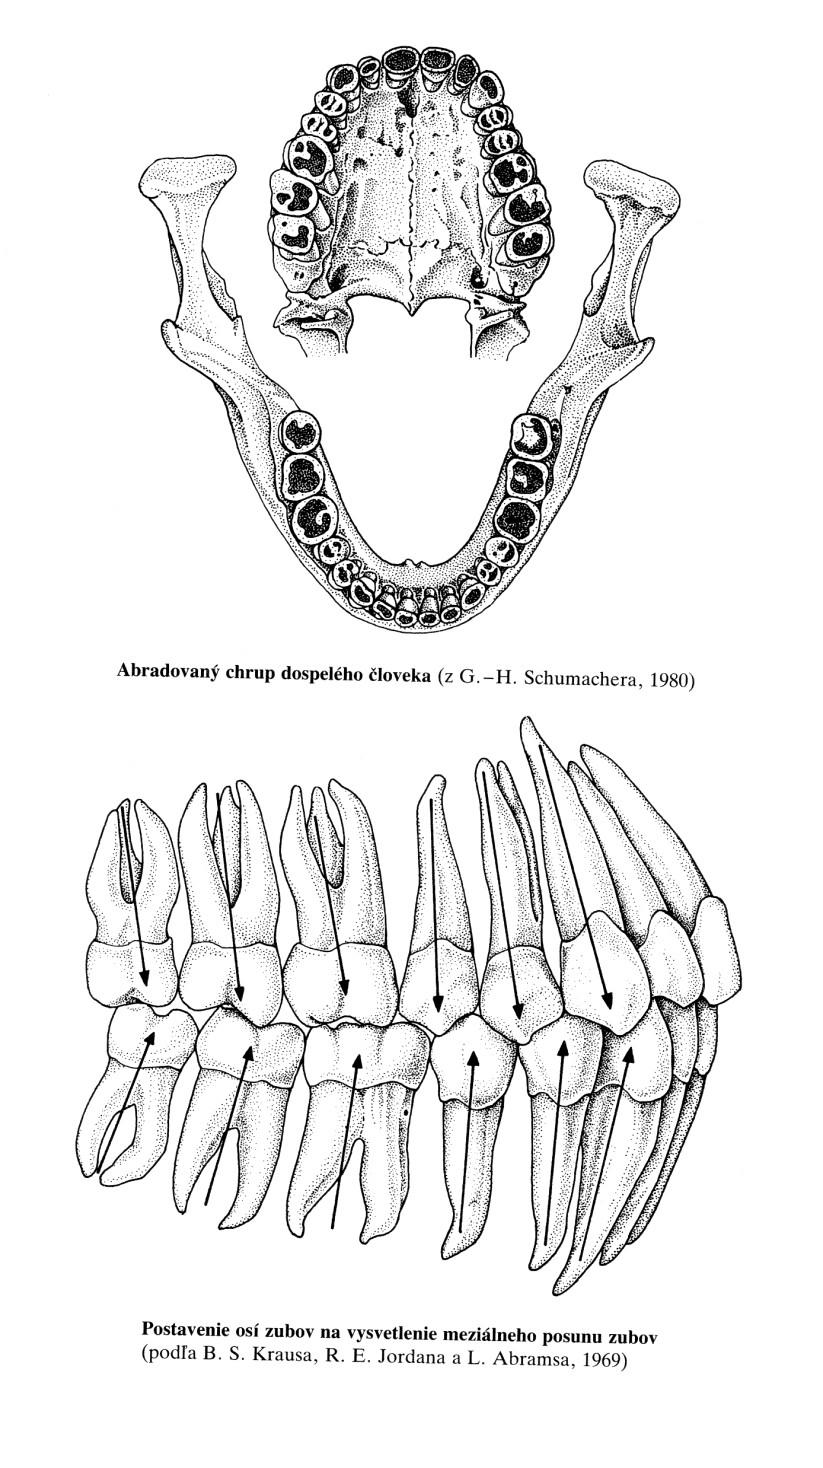 Zuby Schéma časového prořezávání trvalých zubů Pořadí zub doba prořezávání 1. první stolička 5. 7. rok 2. střední řezák 5. 7. rok 3. boční řezák 7.